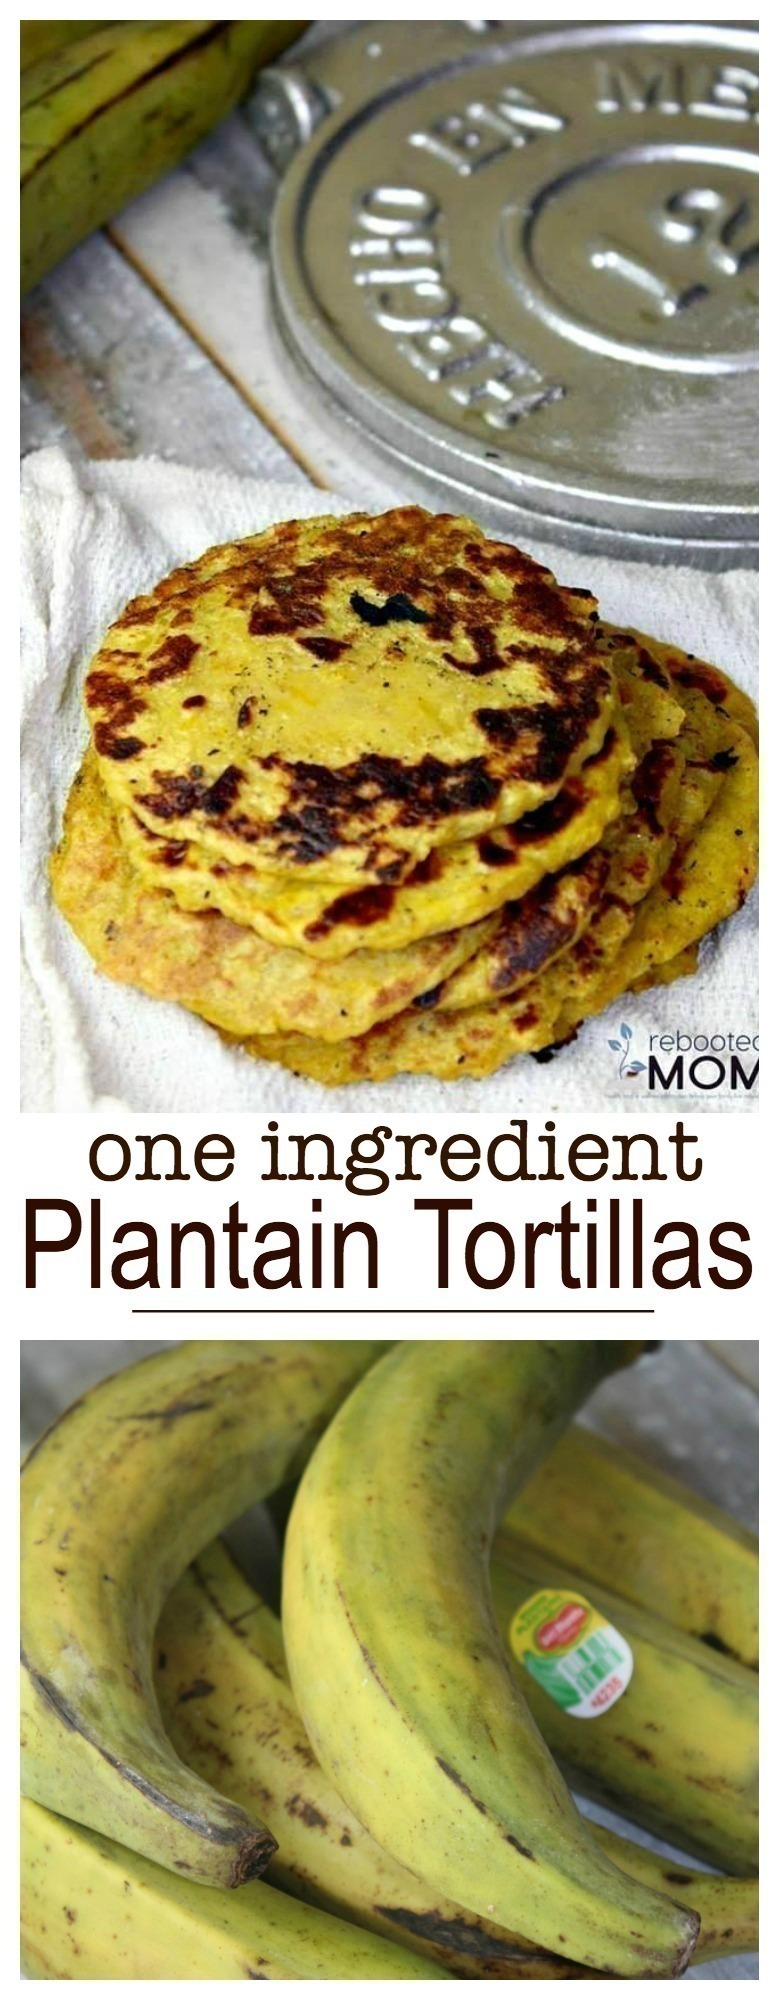 One Ingredient Plantain Tortillas